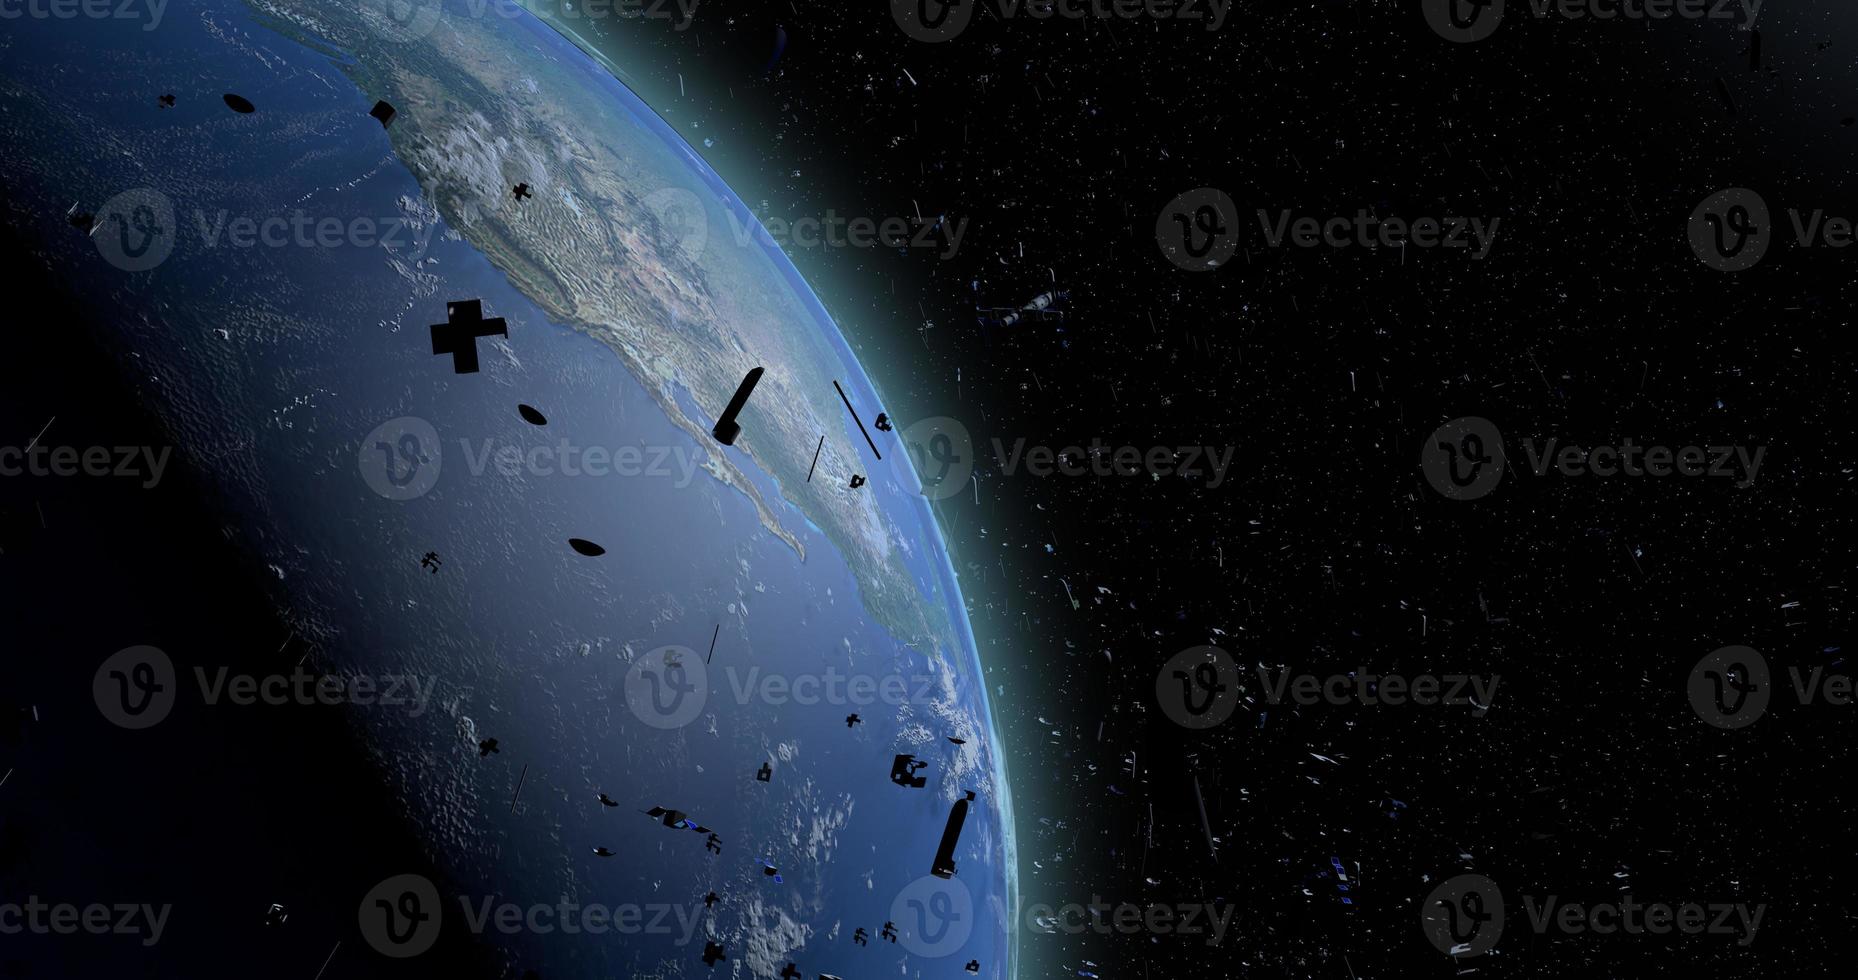 detriti spaziali che galleggiano nell'orbita del pianeta terra. vecchi satelliti, razzi di supporto, pezzi di metallo sono una minaccia perché possono entrare in collisione con i nuovi satelliti. illustrazione 3d foto